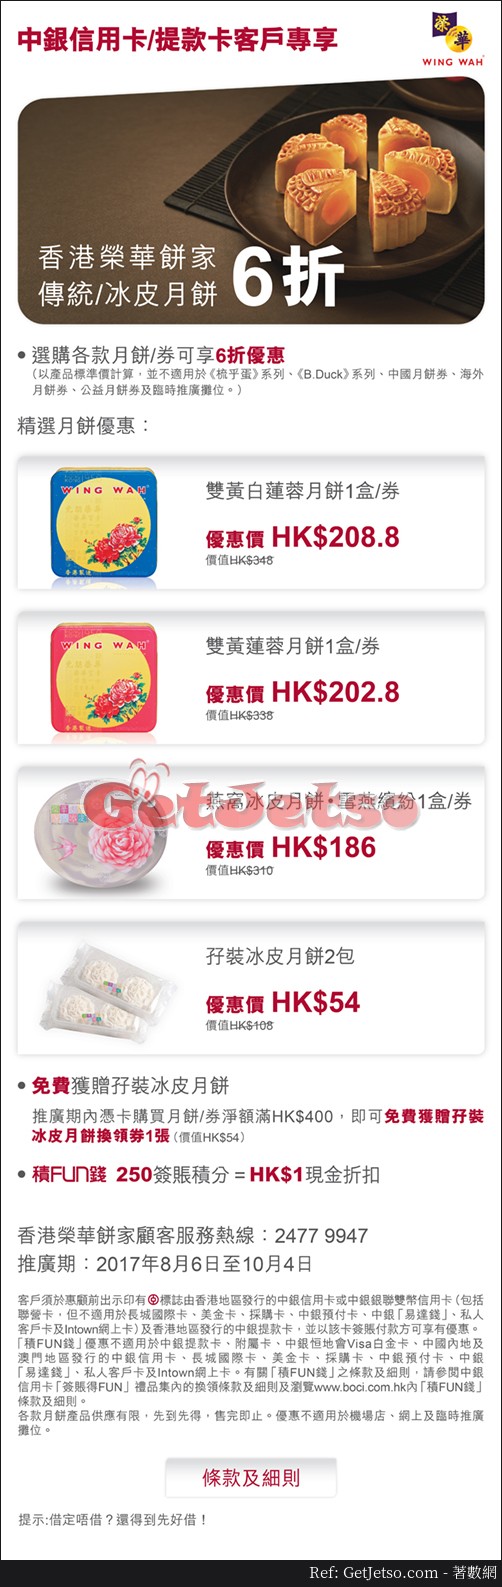 中銀信用卡享香港榮華餅家傳統/冰皮月餅6折優惠(至17年10月4日)圖片1